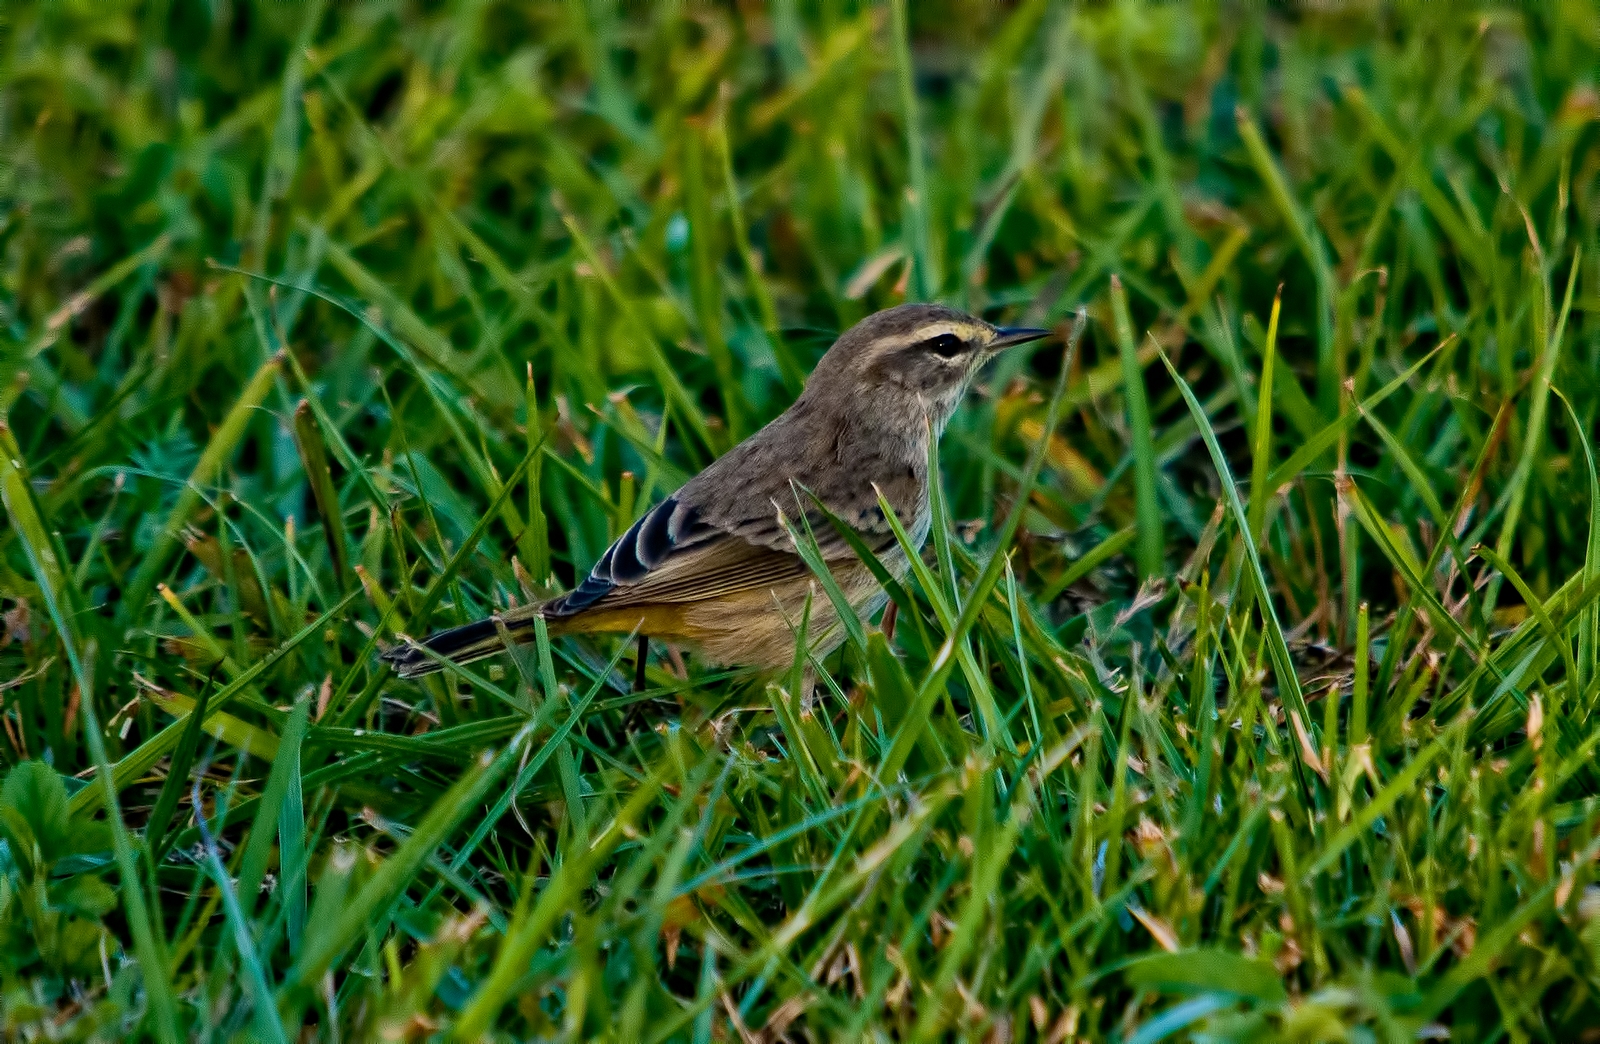 a little bird sitting in the grass